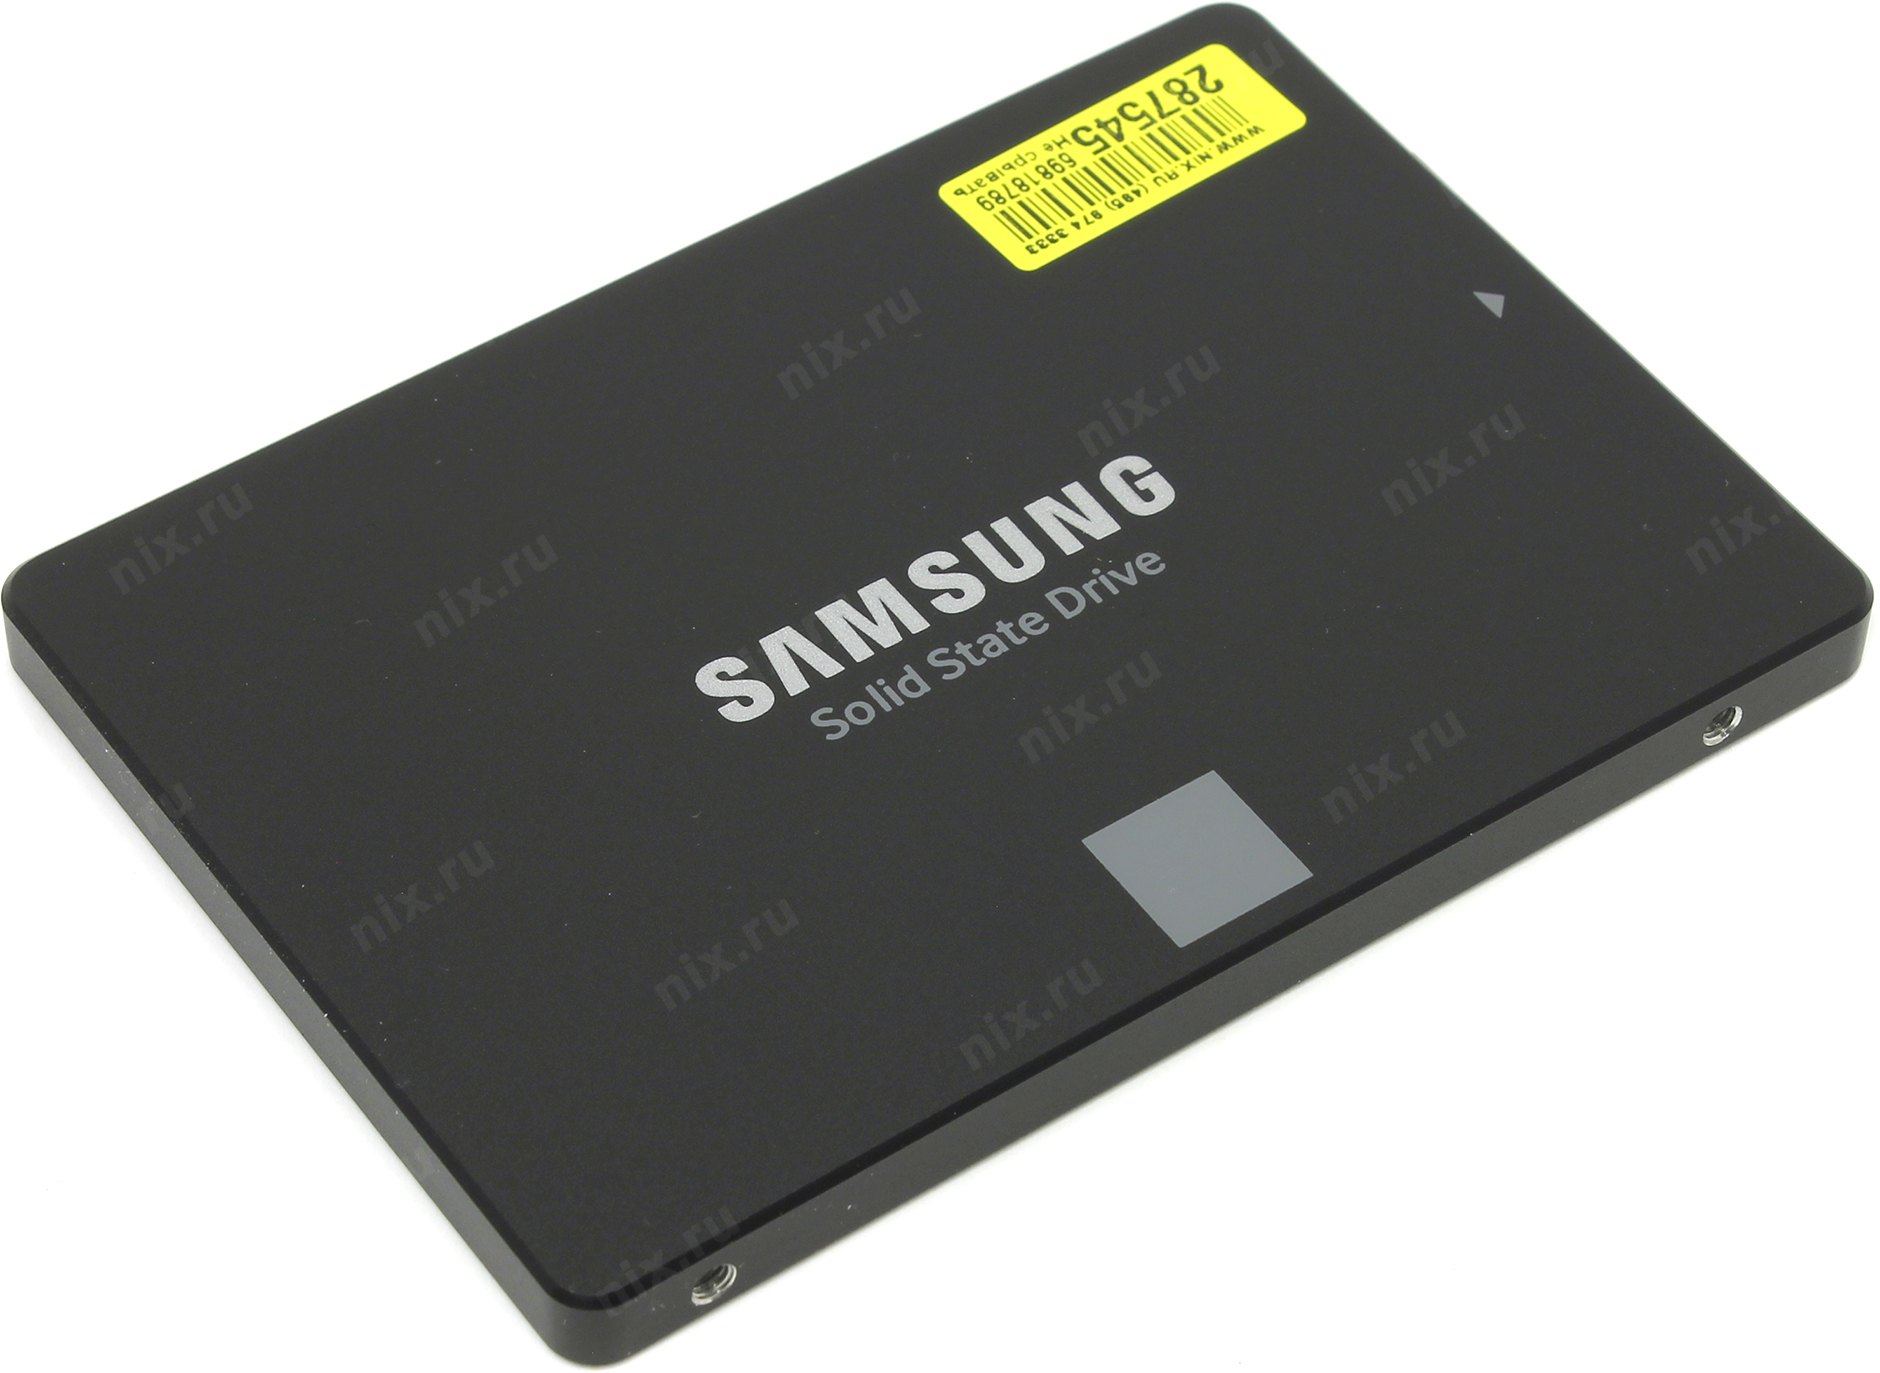 500 тб ssd. Samsung SSD 4tb. SSD 4 ТБ SATA. Внешний ссд самсунг 4 ТБ. Samsung 4 ТБ SATA MZ-77q4t0bw.